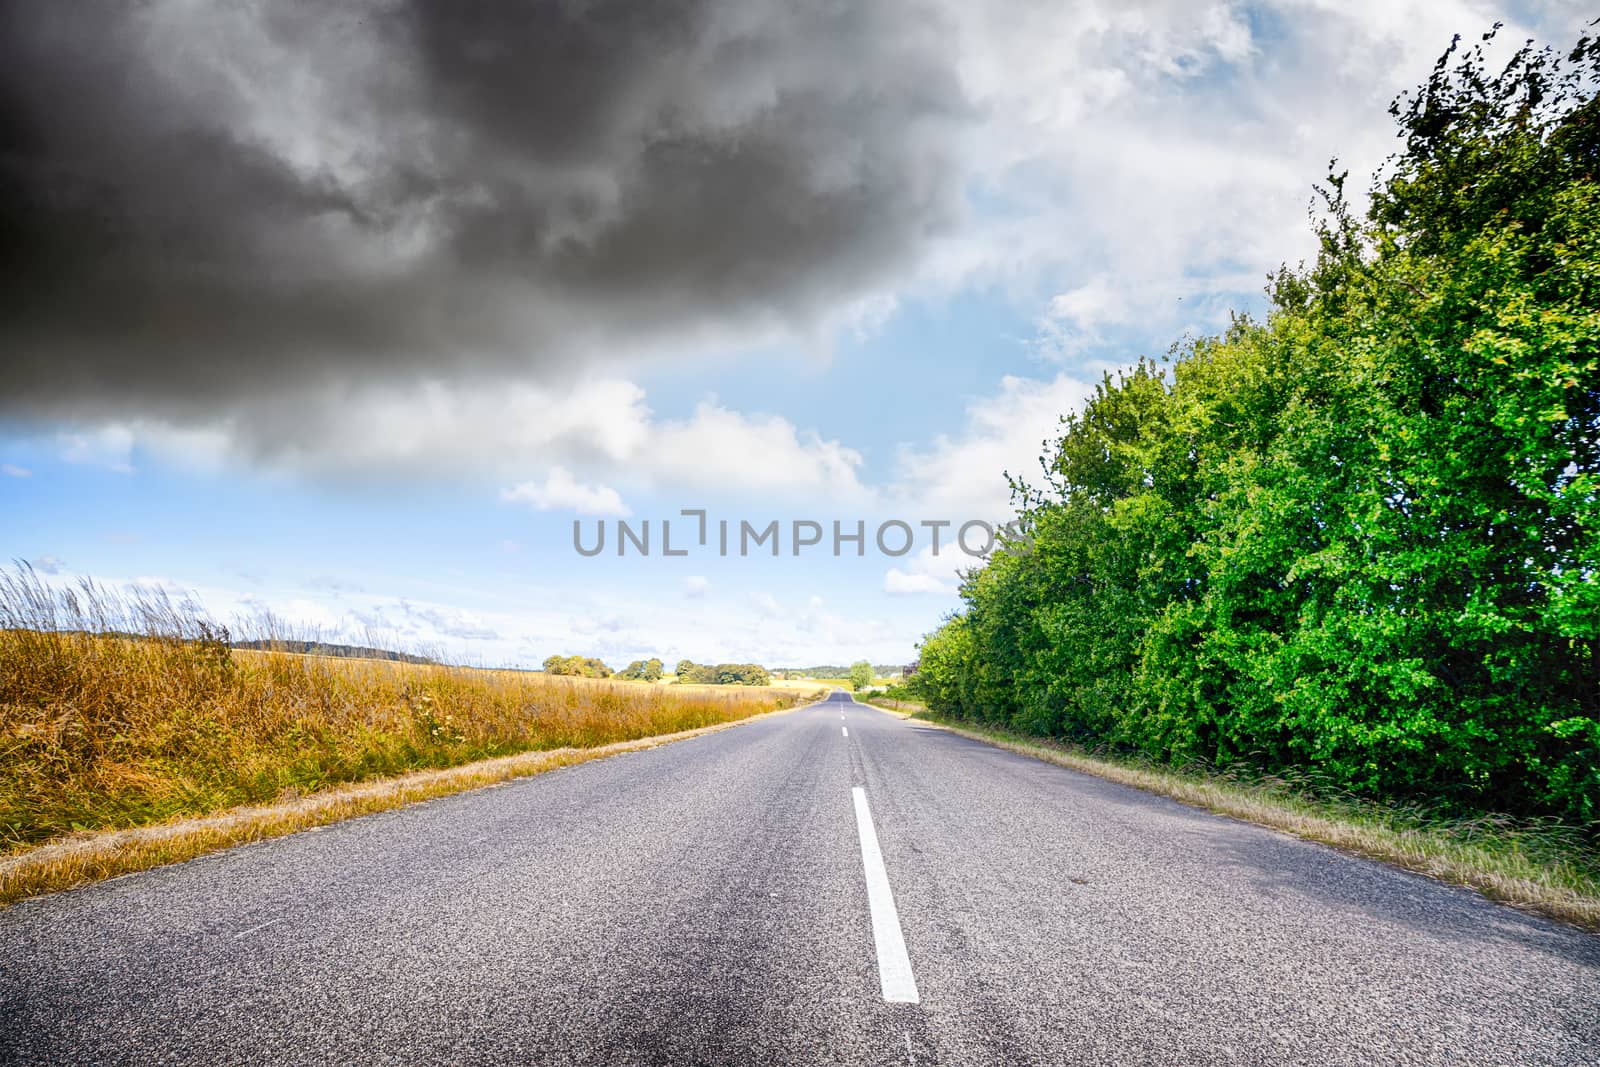 Asphalt road in a rural landscape by Sportactive